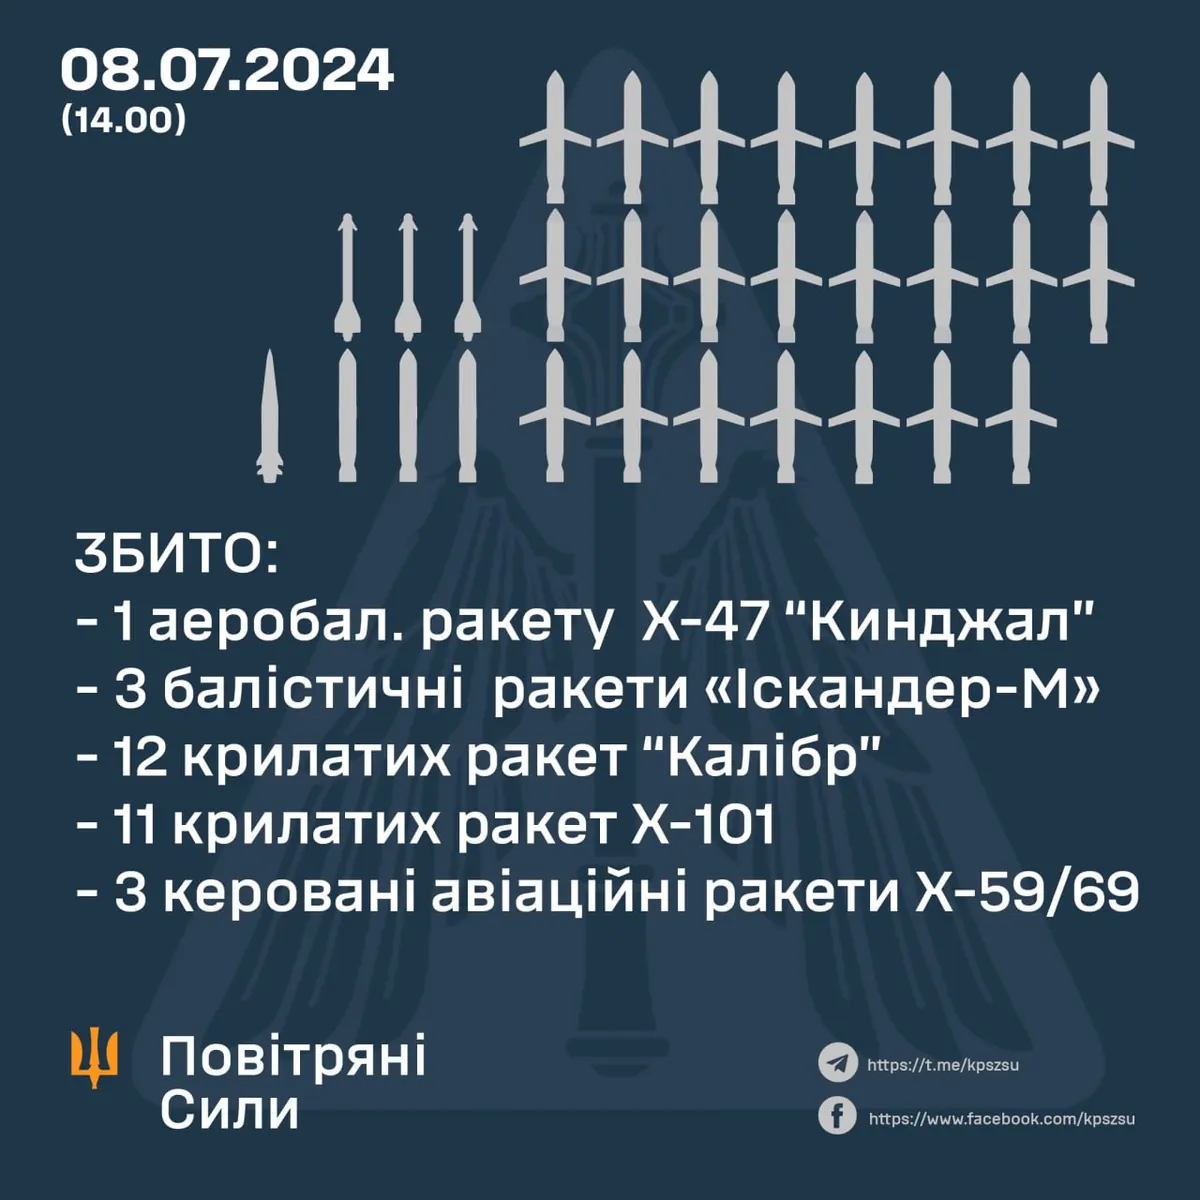 Во время массированного ракетного удара силы ПВО сбили 30 российских ракет - Олещук